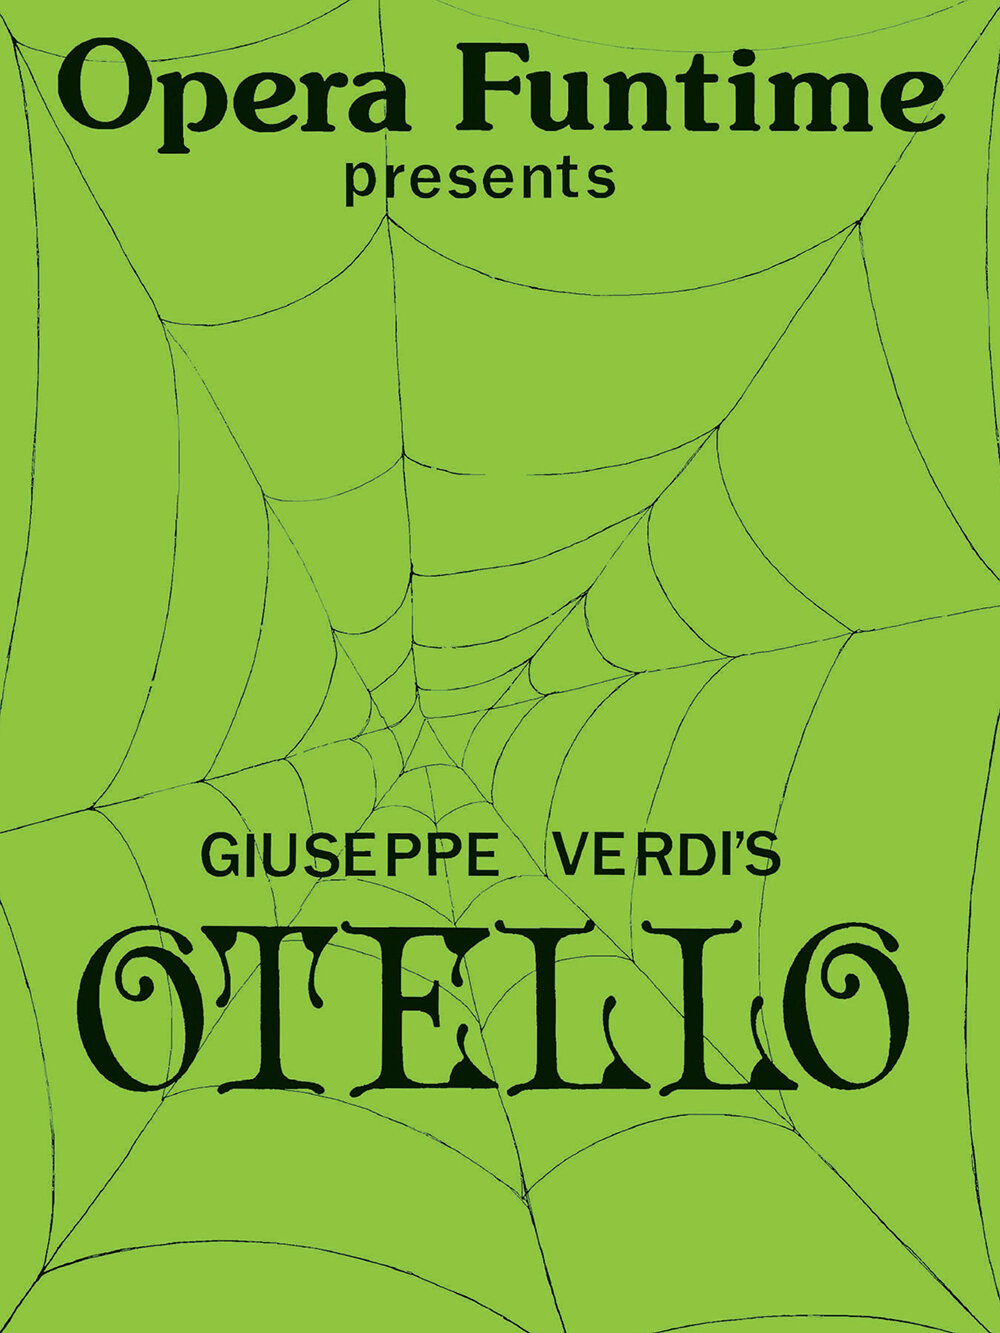 YPO Opera Funtime_Otello.jpg